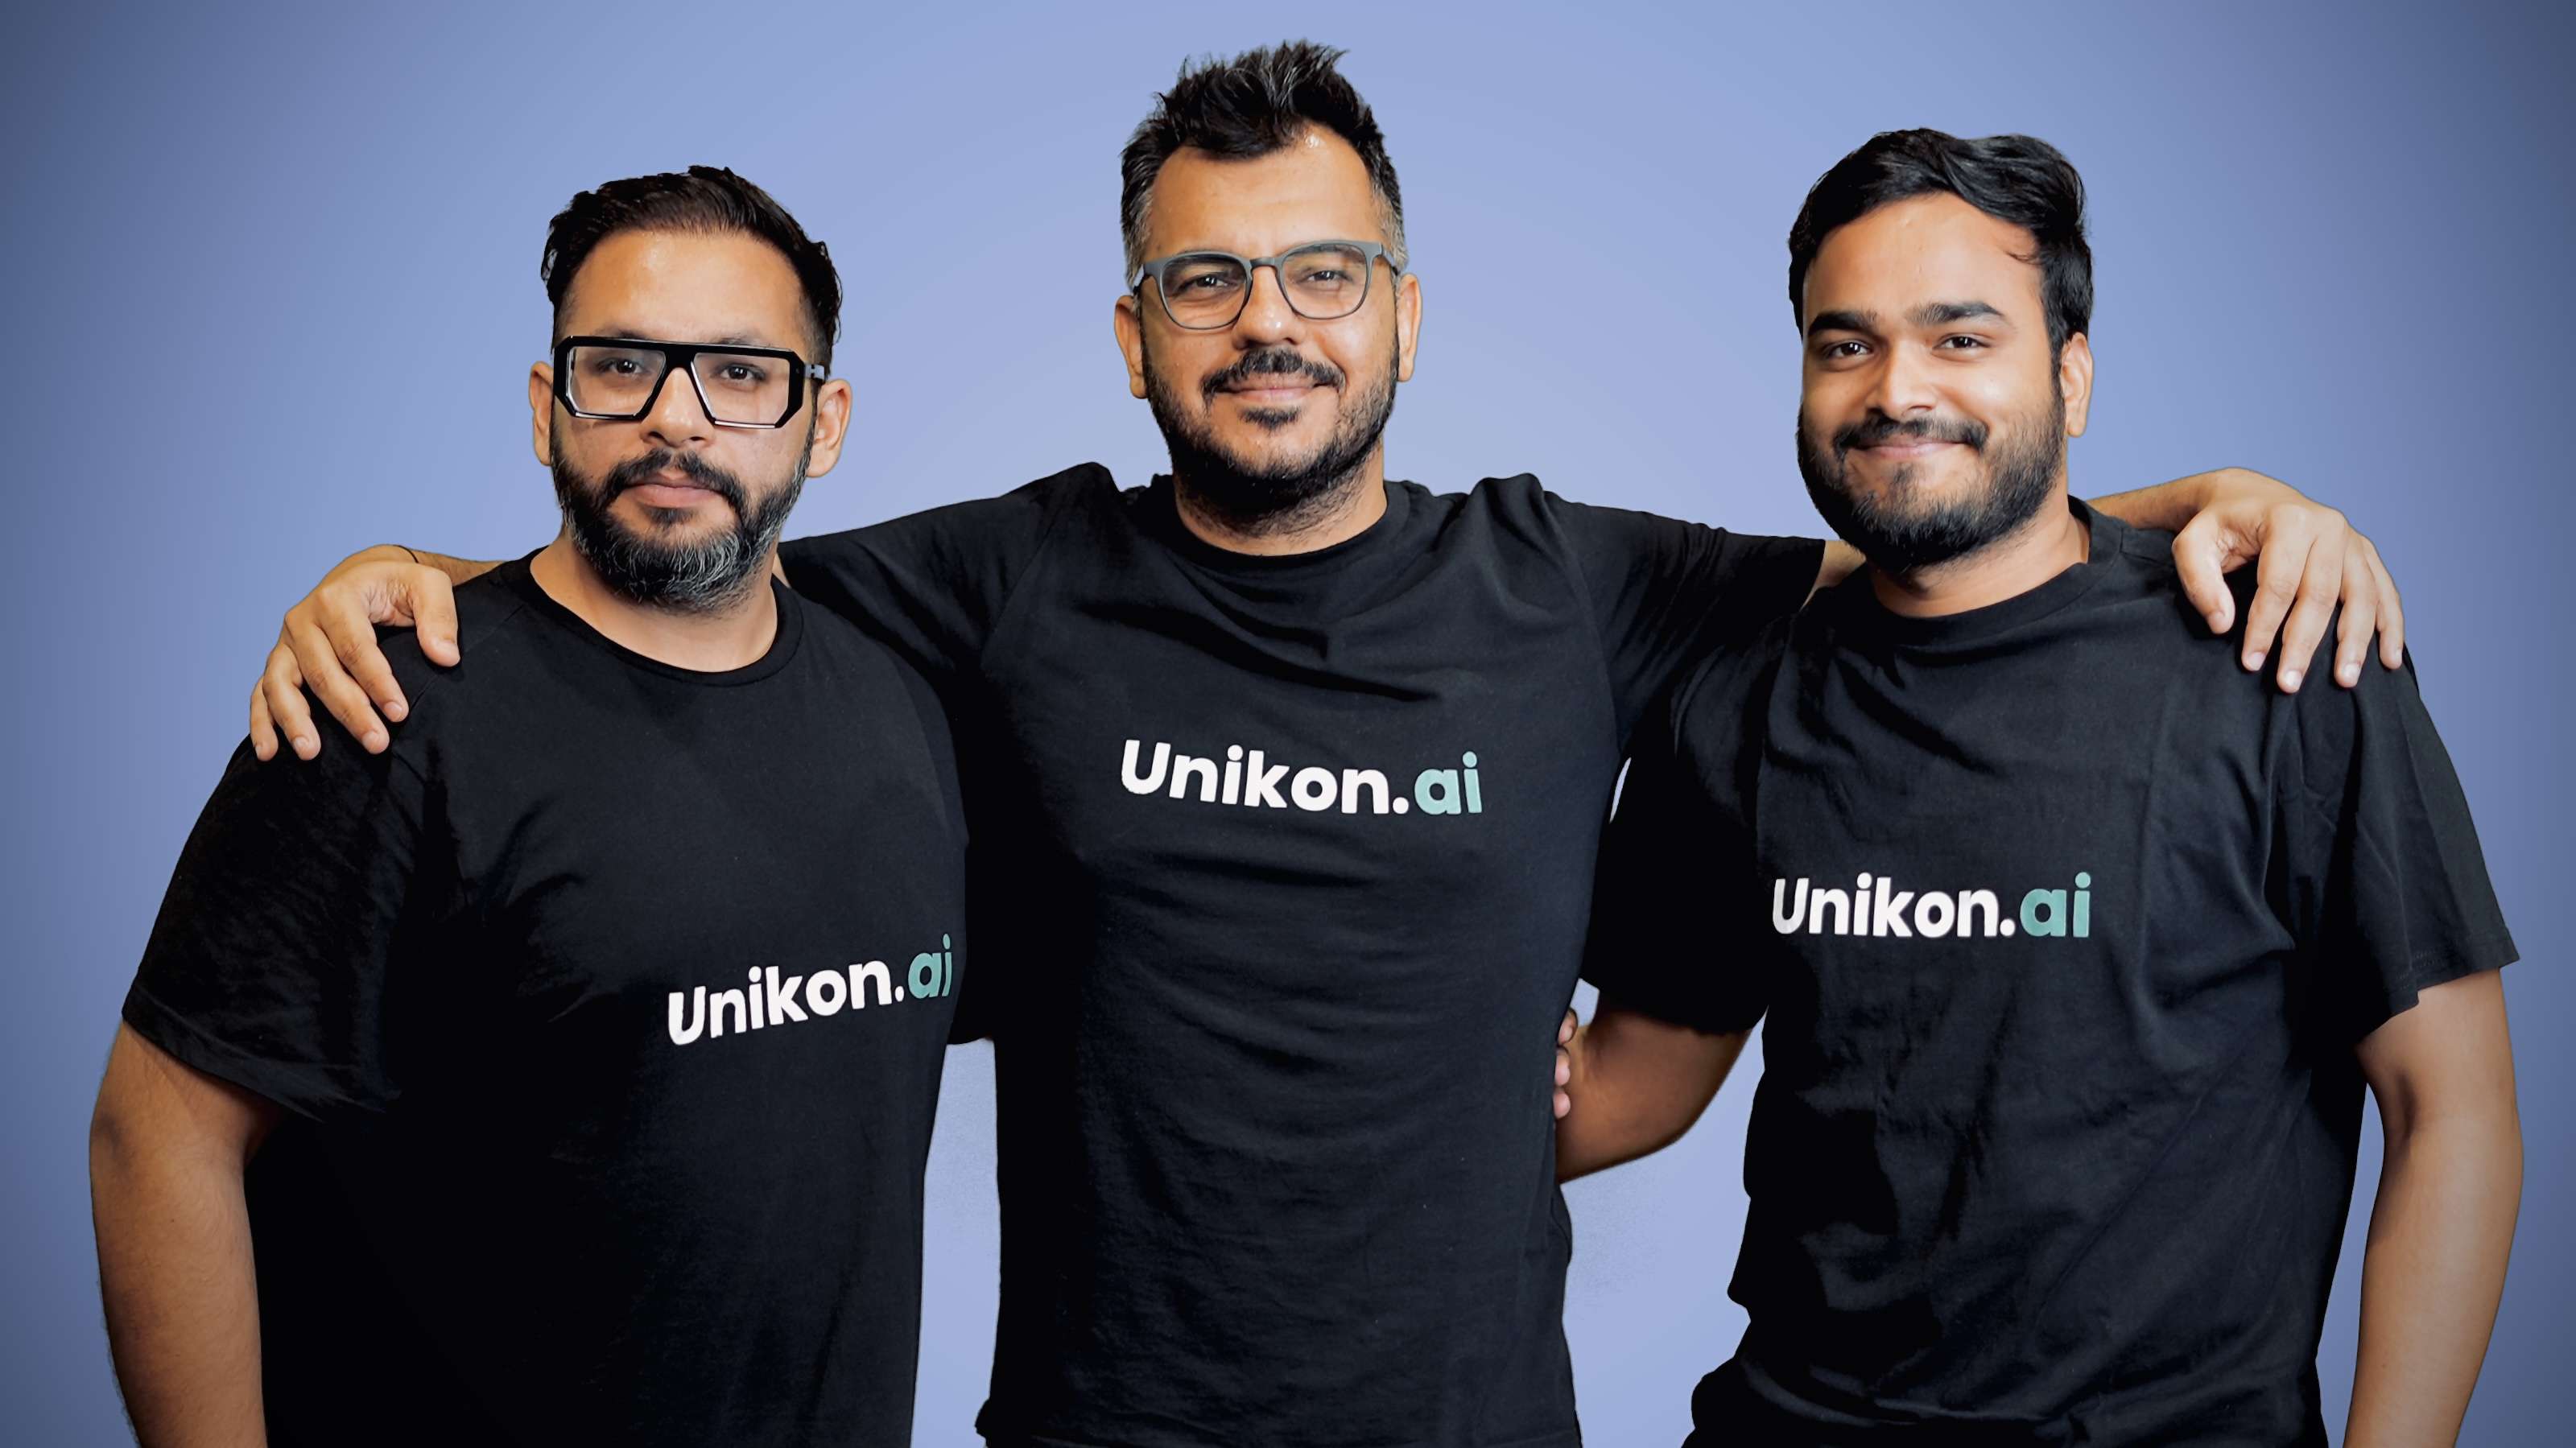 Unikon AI raises $2 million in funding led by Zerodha's Nikhil Kamath, others 